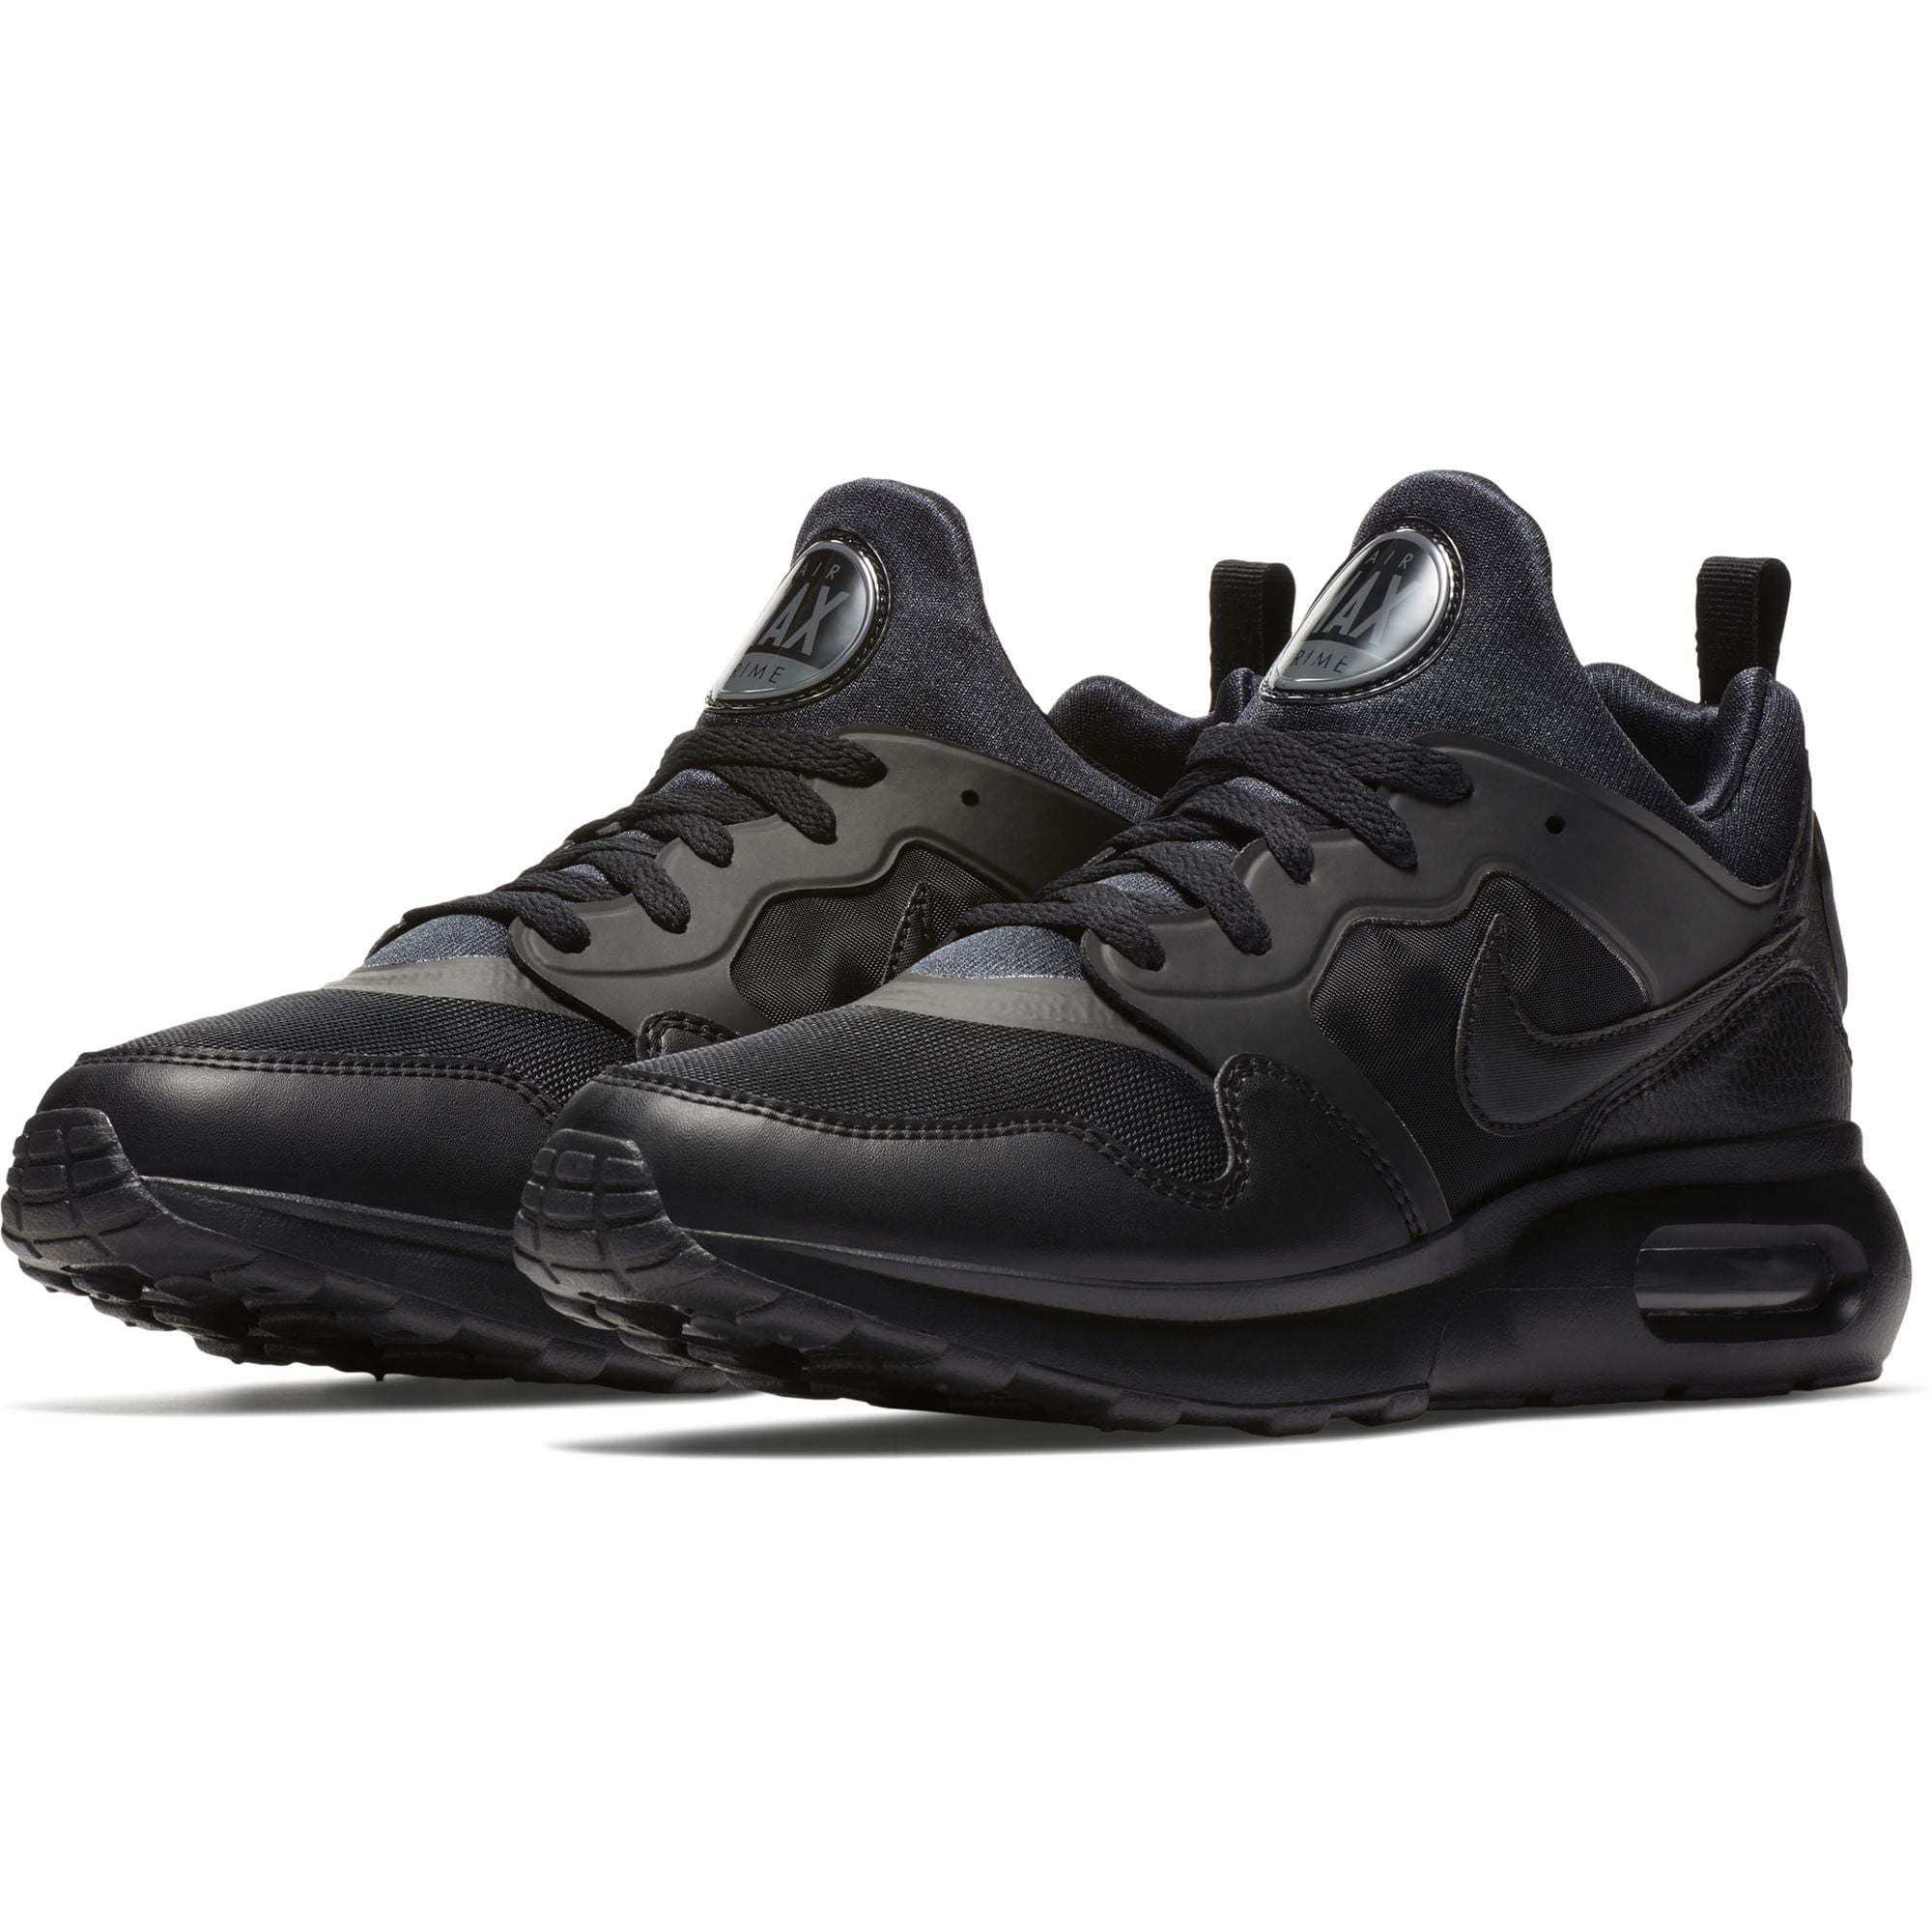 judge Ruckus school Nike Men's Air Max Prime Running Shoe Black/Black-Dark Grey 11 - Walmart.com